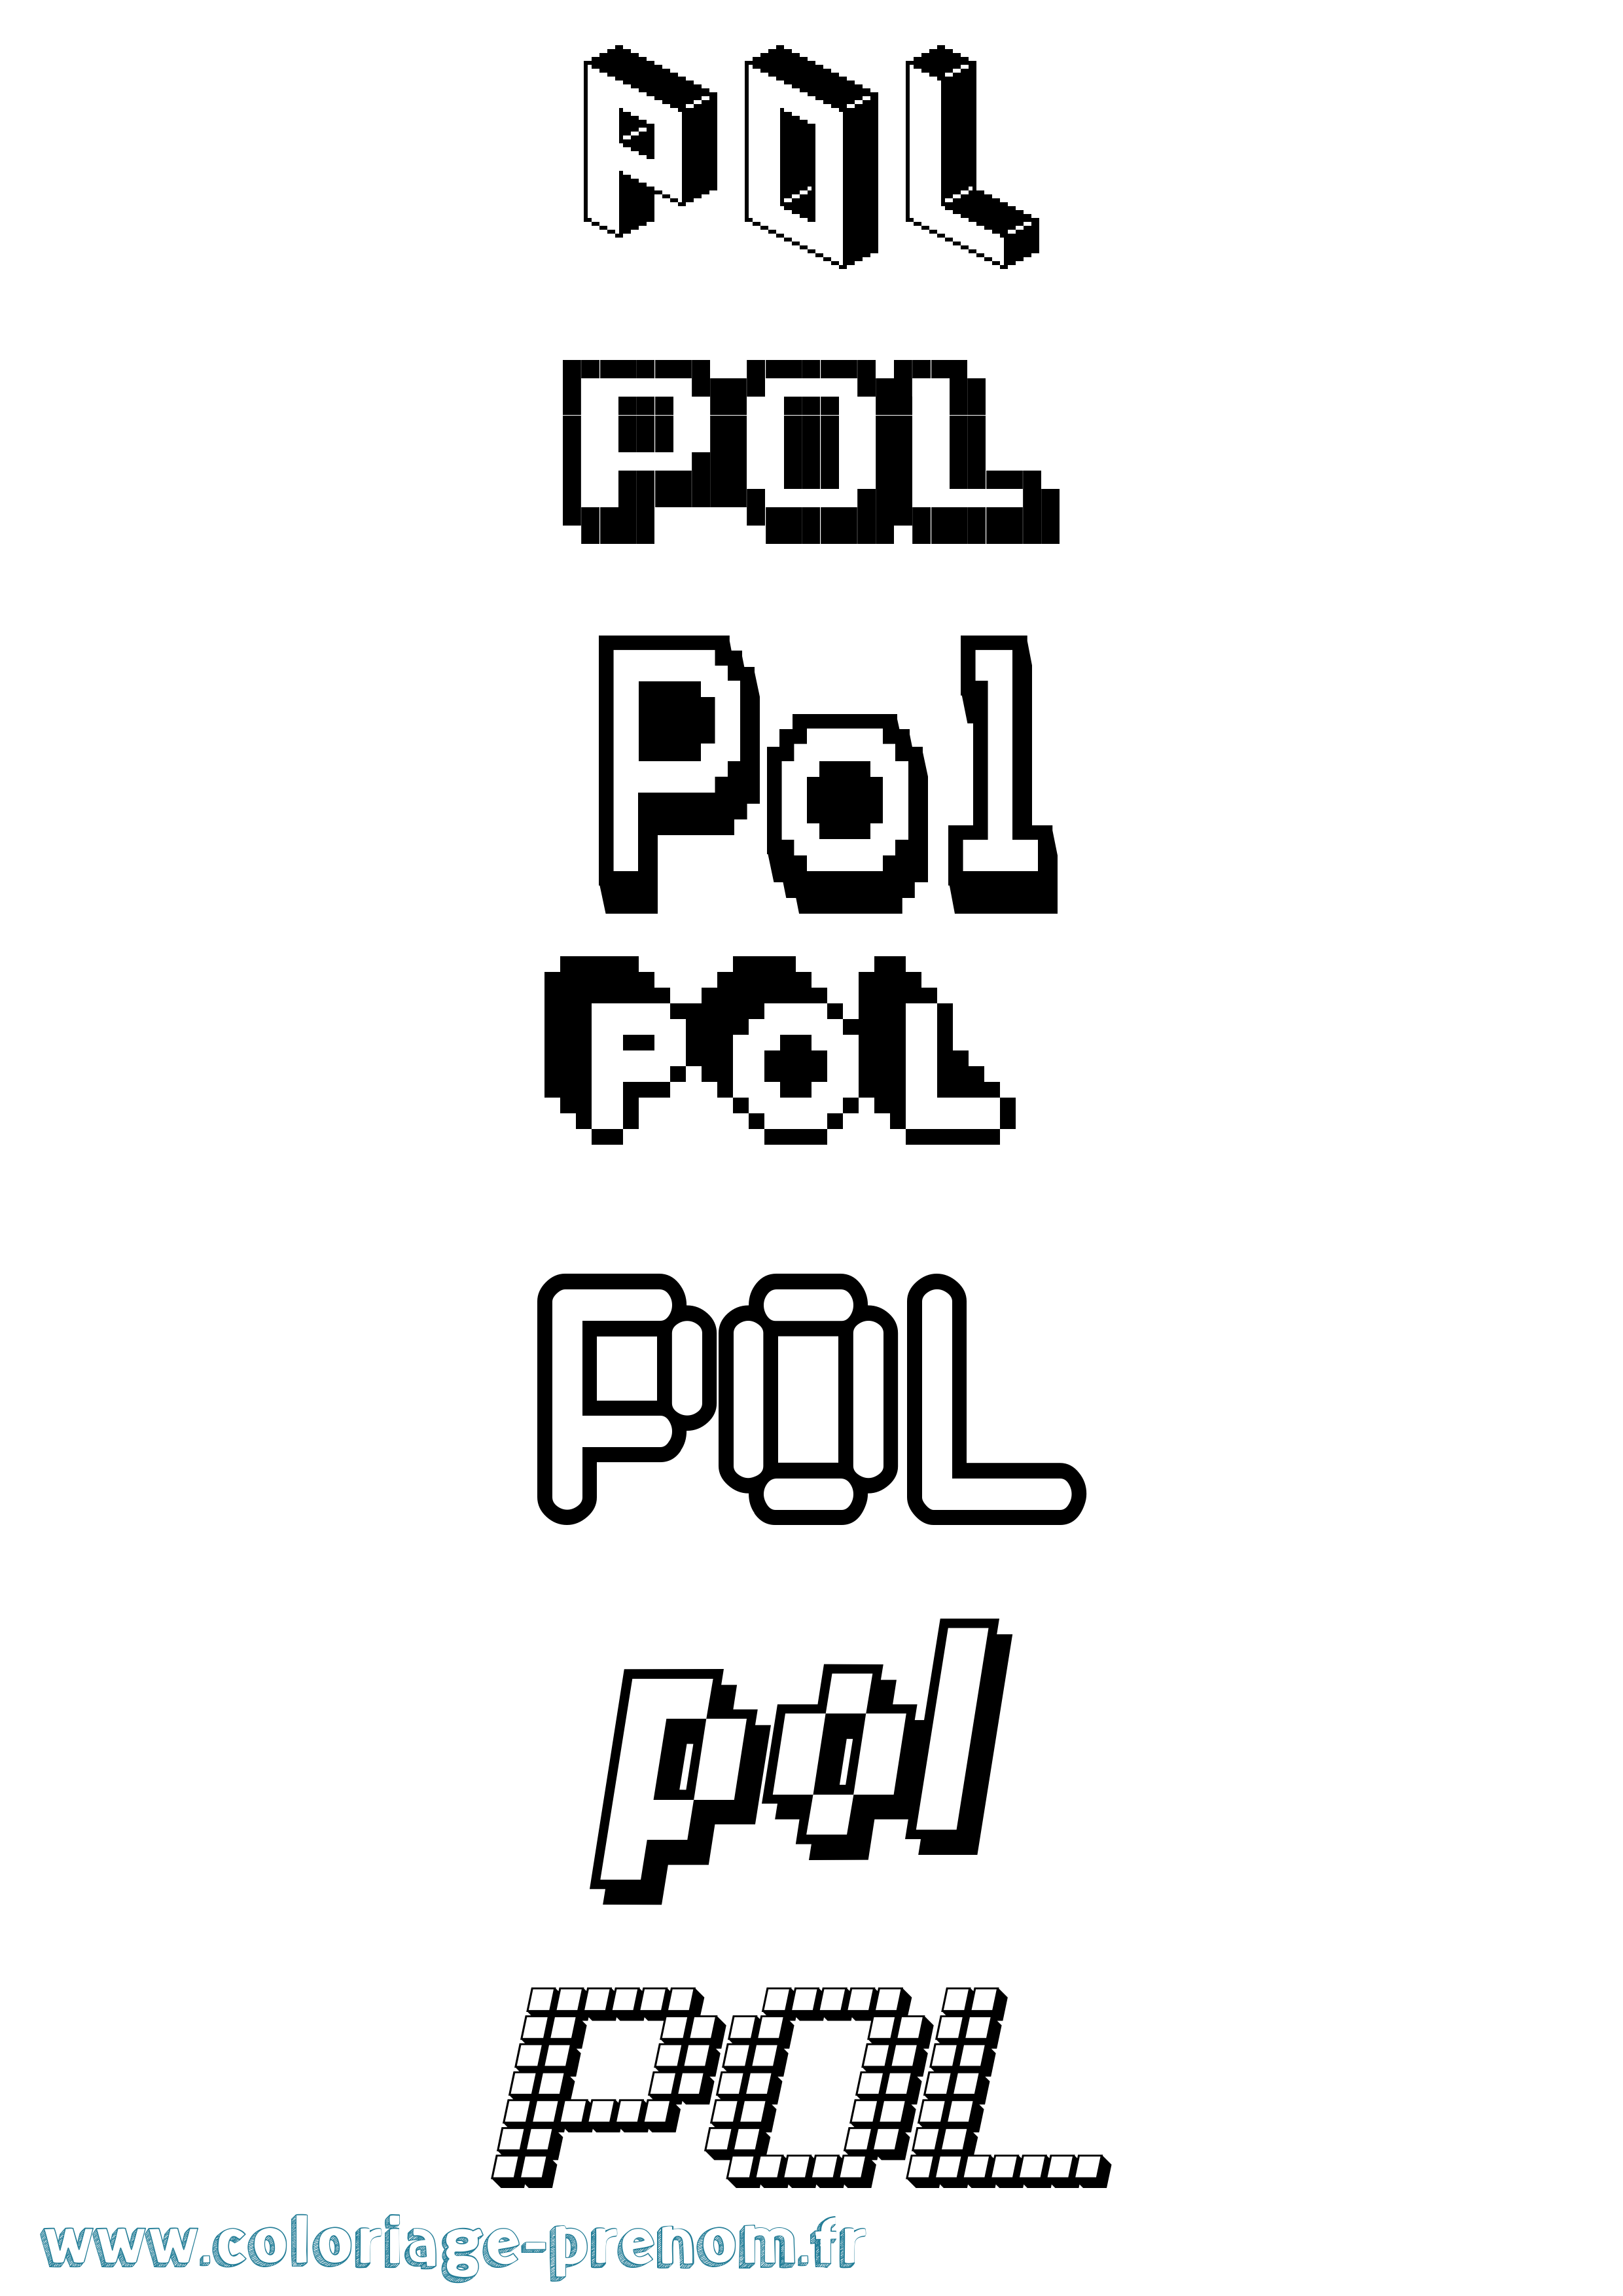 Coloriage prénom Pol